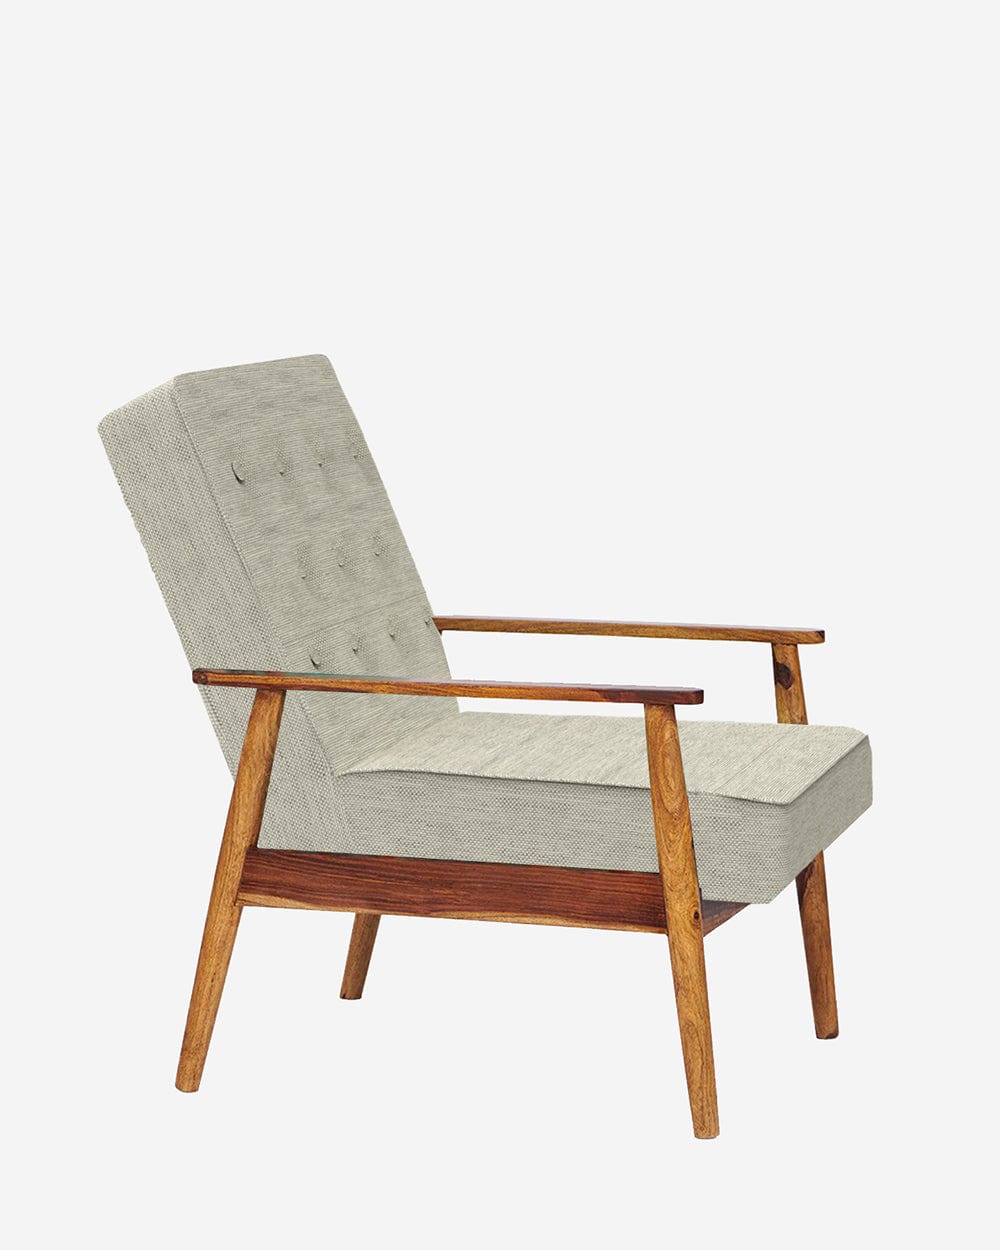 Chumbak Memsaab Arm Chair - Srilanka Ivory